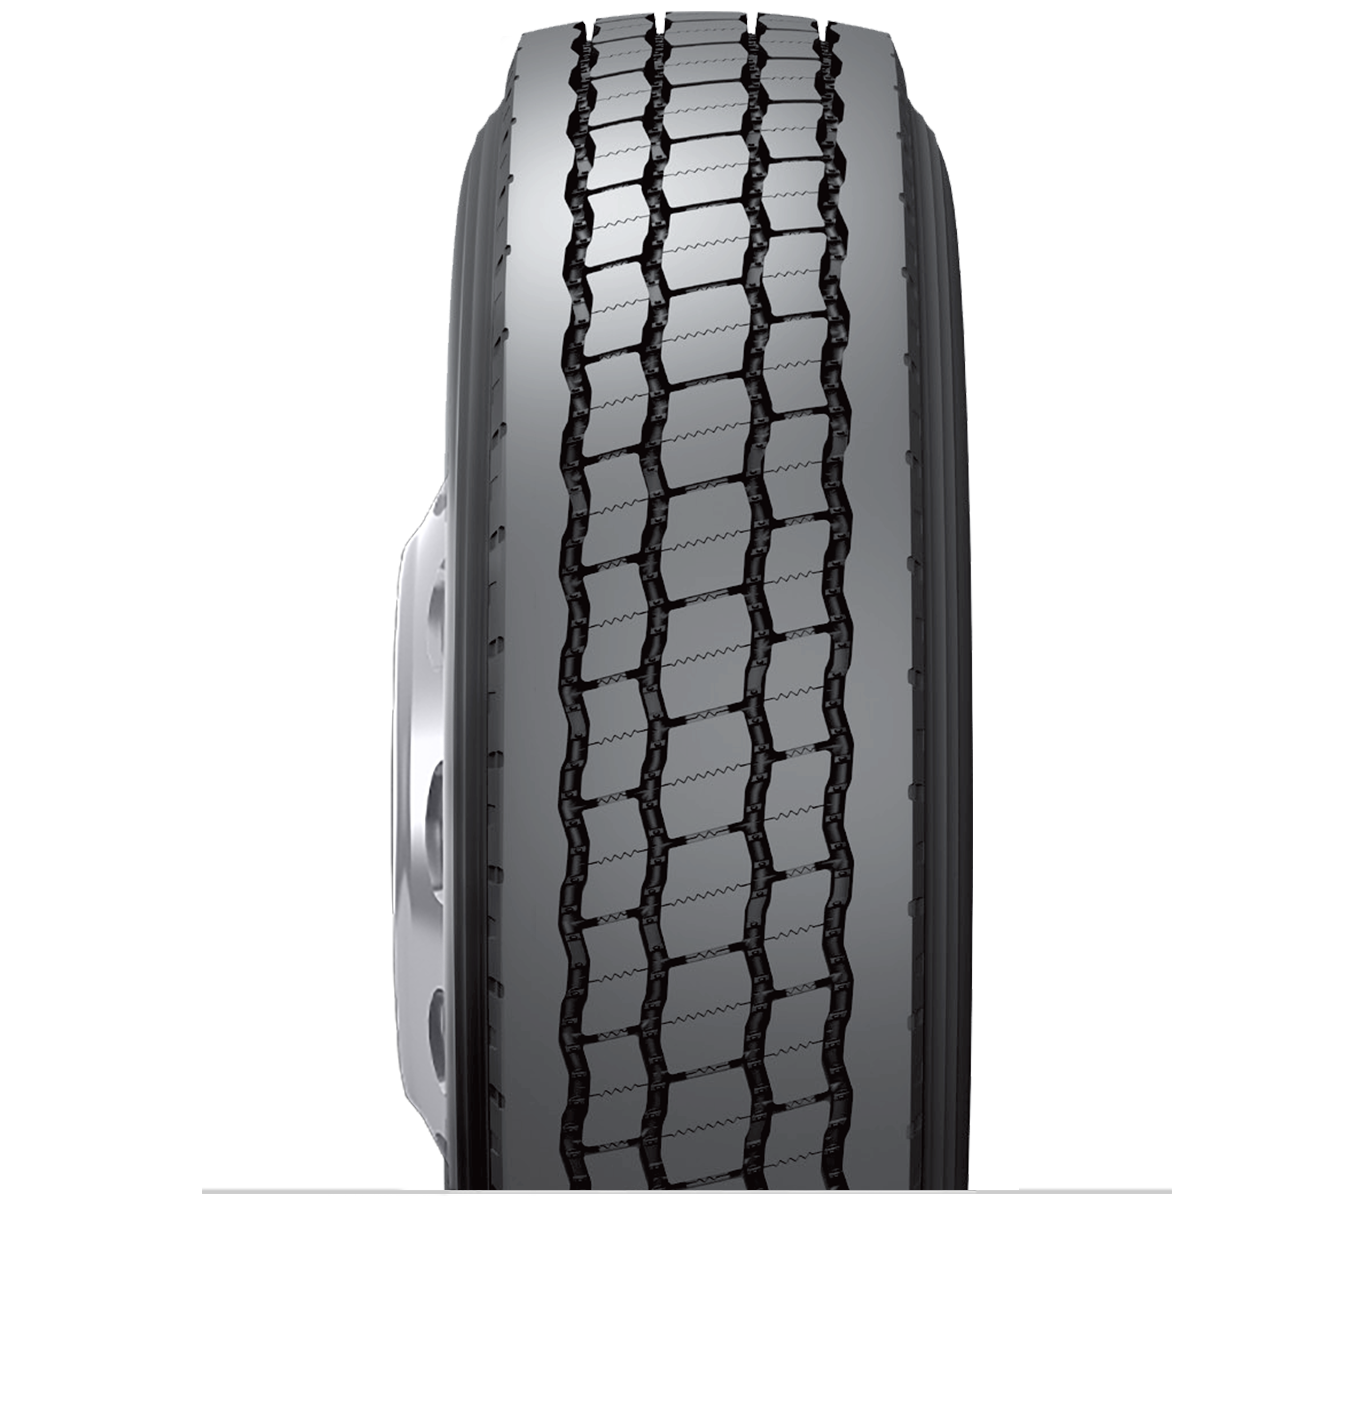 Caractéristiques spécialisées du pneu rechapé B713™